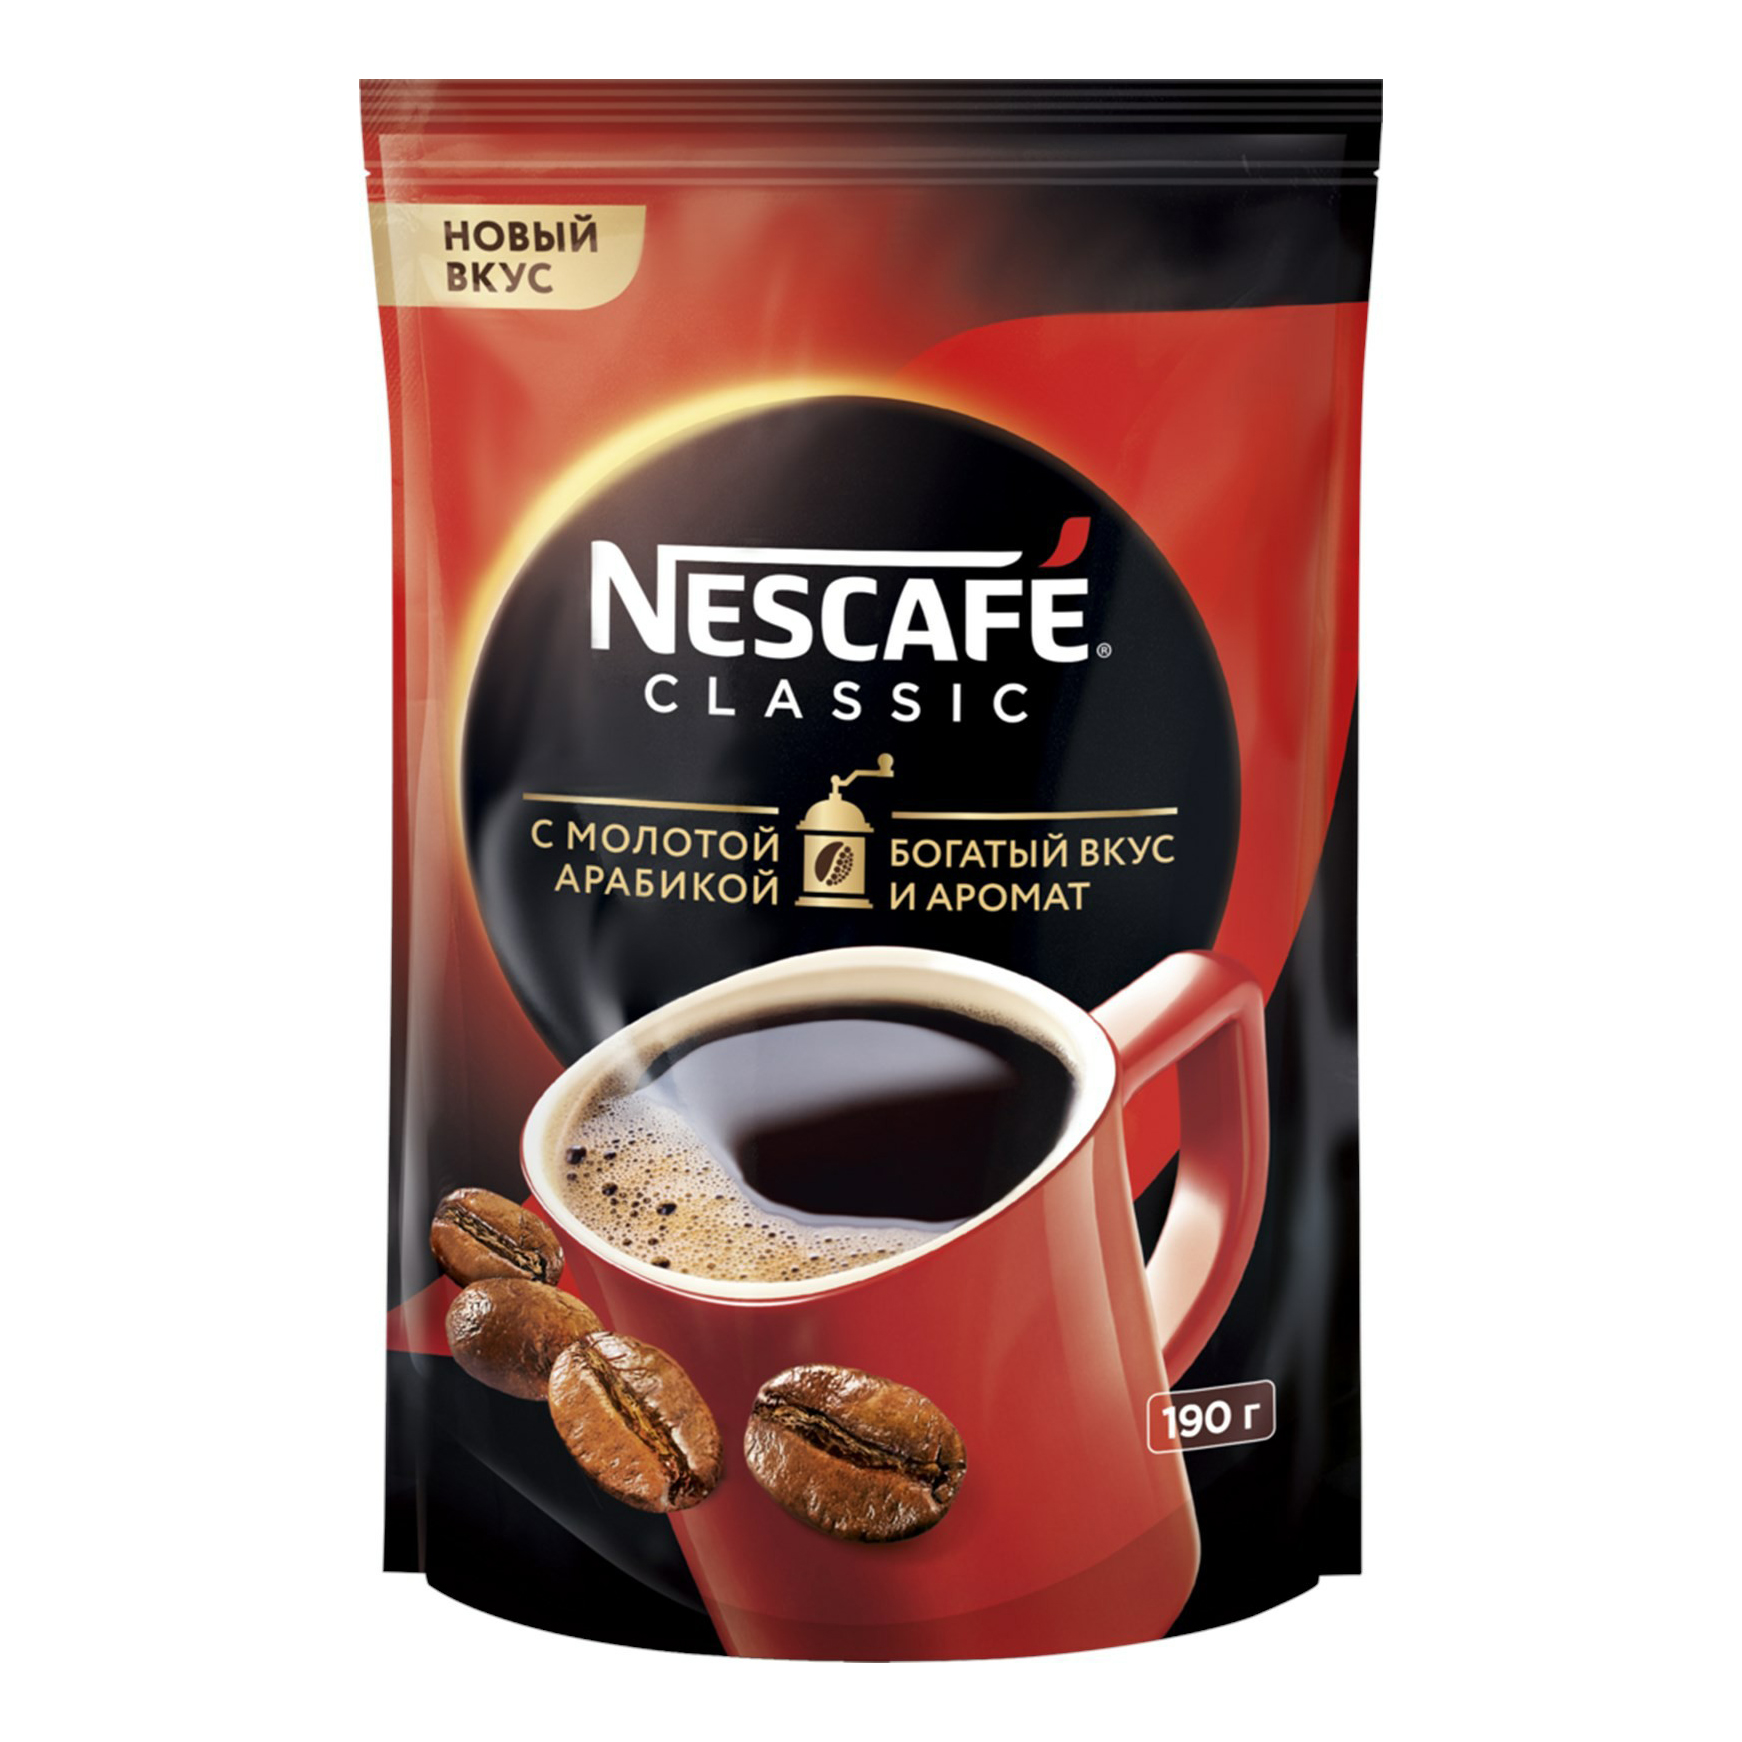 Купить кофе Nescafe Classic натуральный растворимый гранулированный с молотой арабикой 190 г, цены на Мегамаркет | Артикул: 100038843070